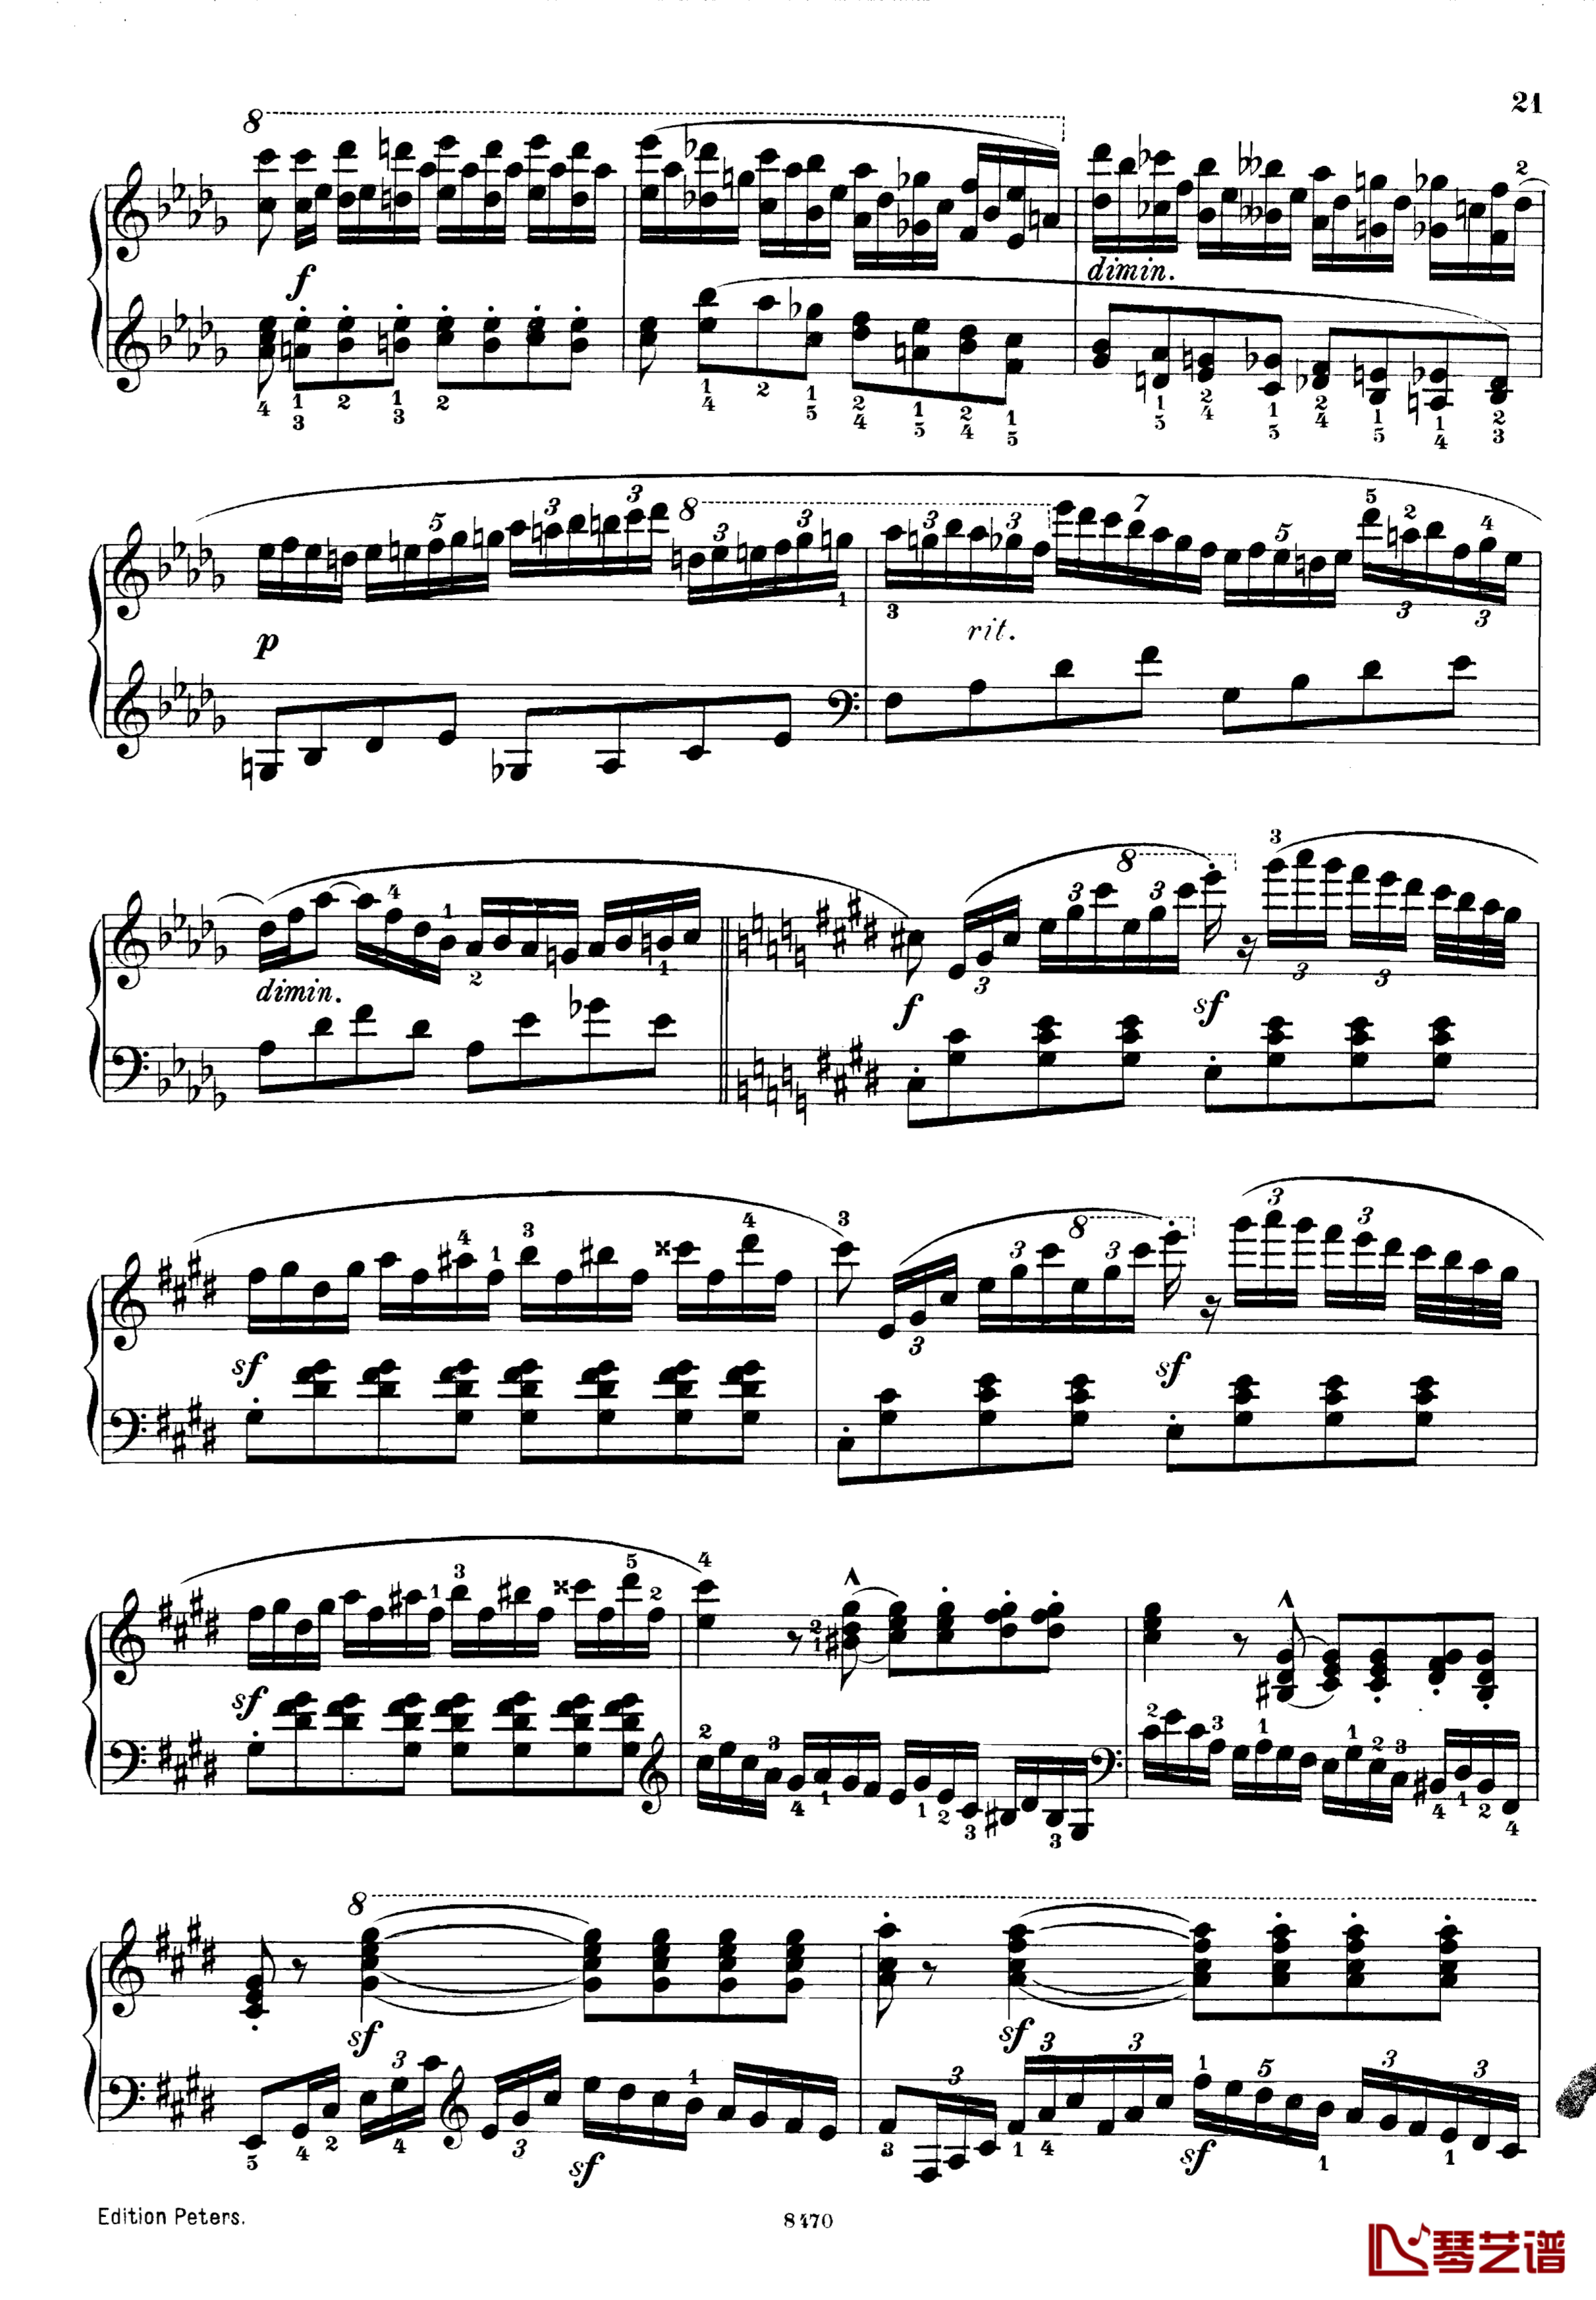 升c小调第三钢琴协奏曲Op.55钢琴谱-克里斯蒂安-里斯21